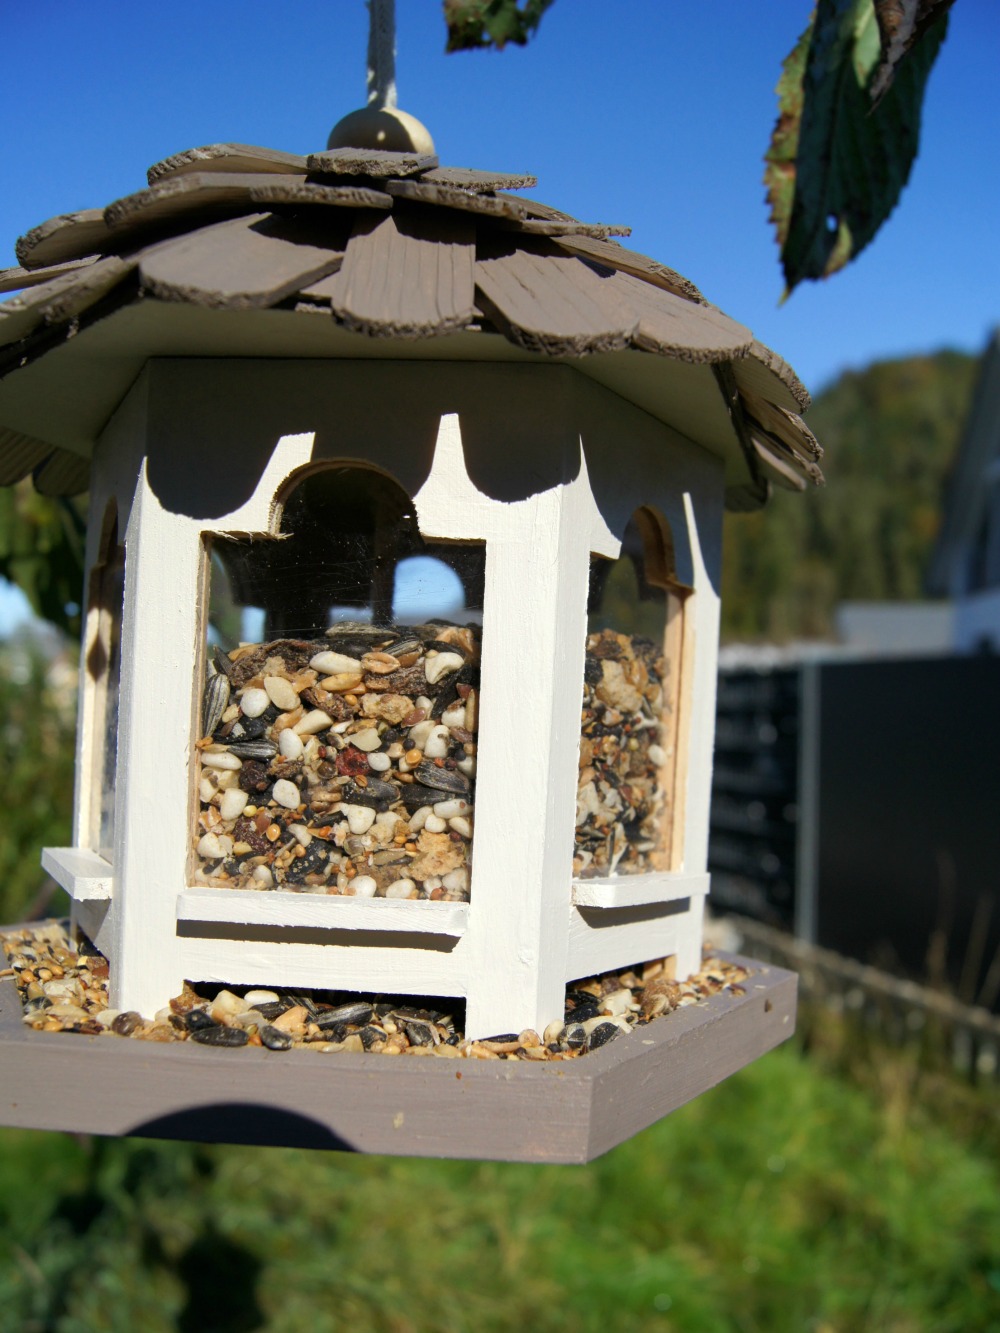 Ein Vogelhäuschen mit Kindern im Garten bauen | von Fantasiewerk.ch